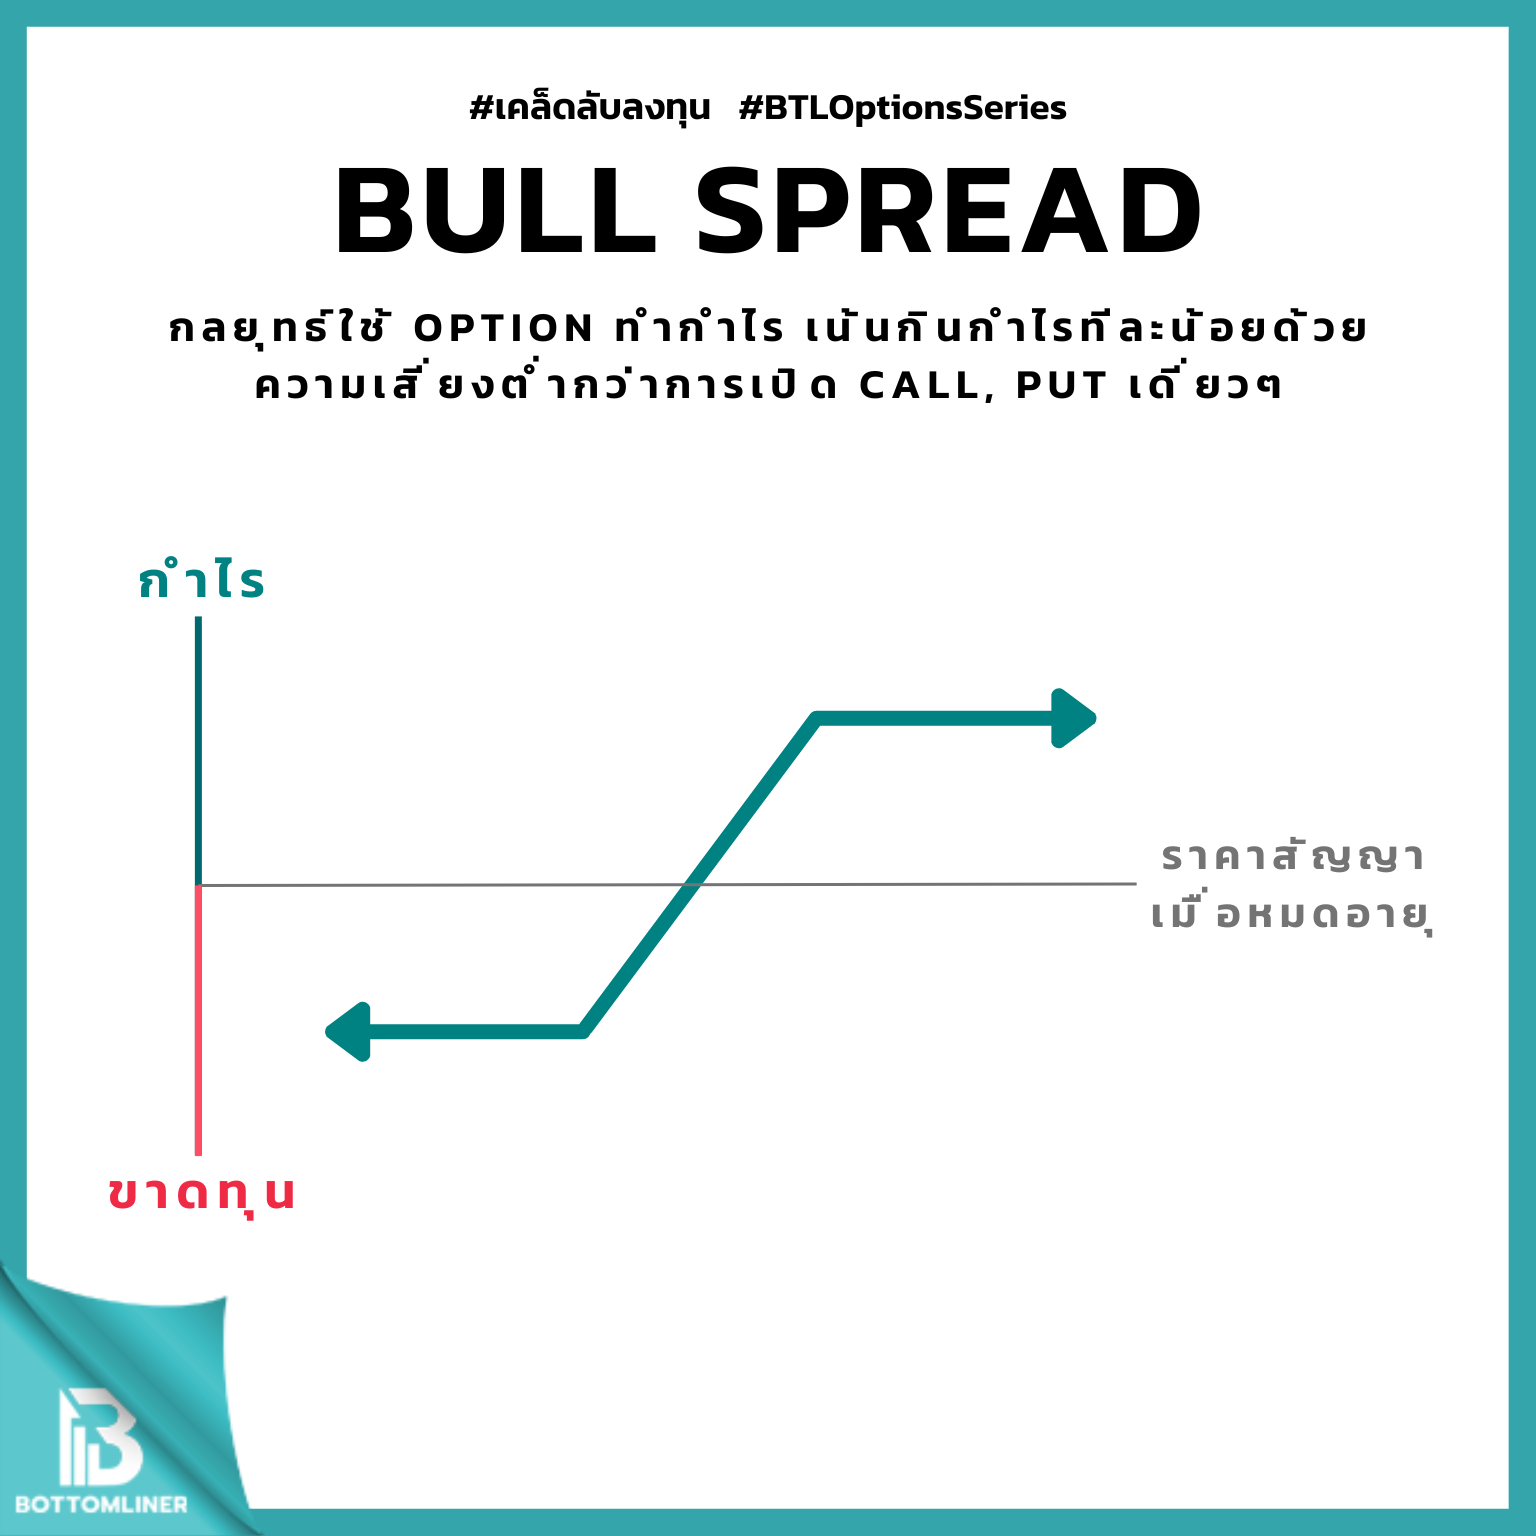 Bull Spread  กลยุทธ์ใช้ Option ทำกำไร เน้นกินกำไรทีละน้อยด้วยความเสี่ยงต่ำกว่าการเปิด Call, Put เดี่ยวๆ